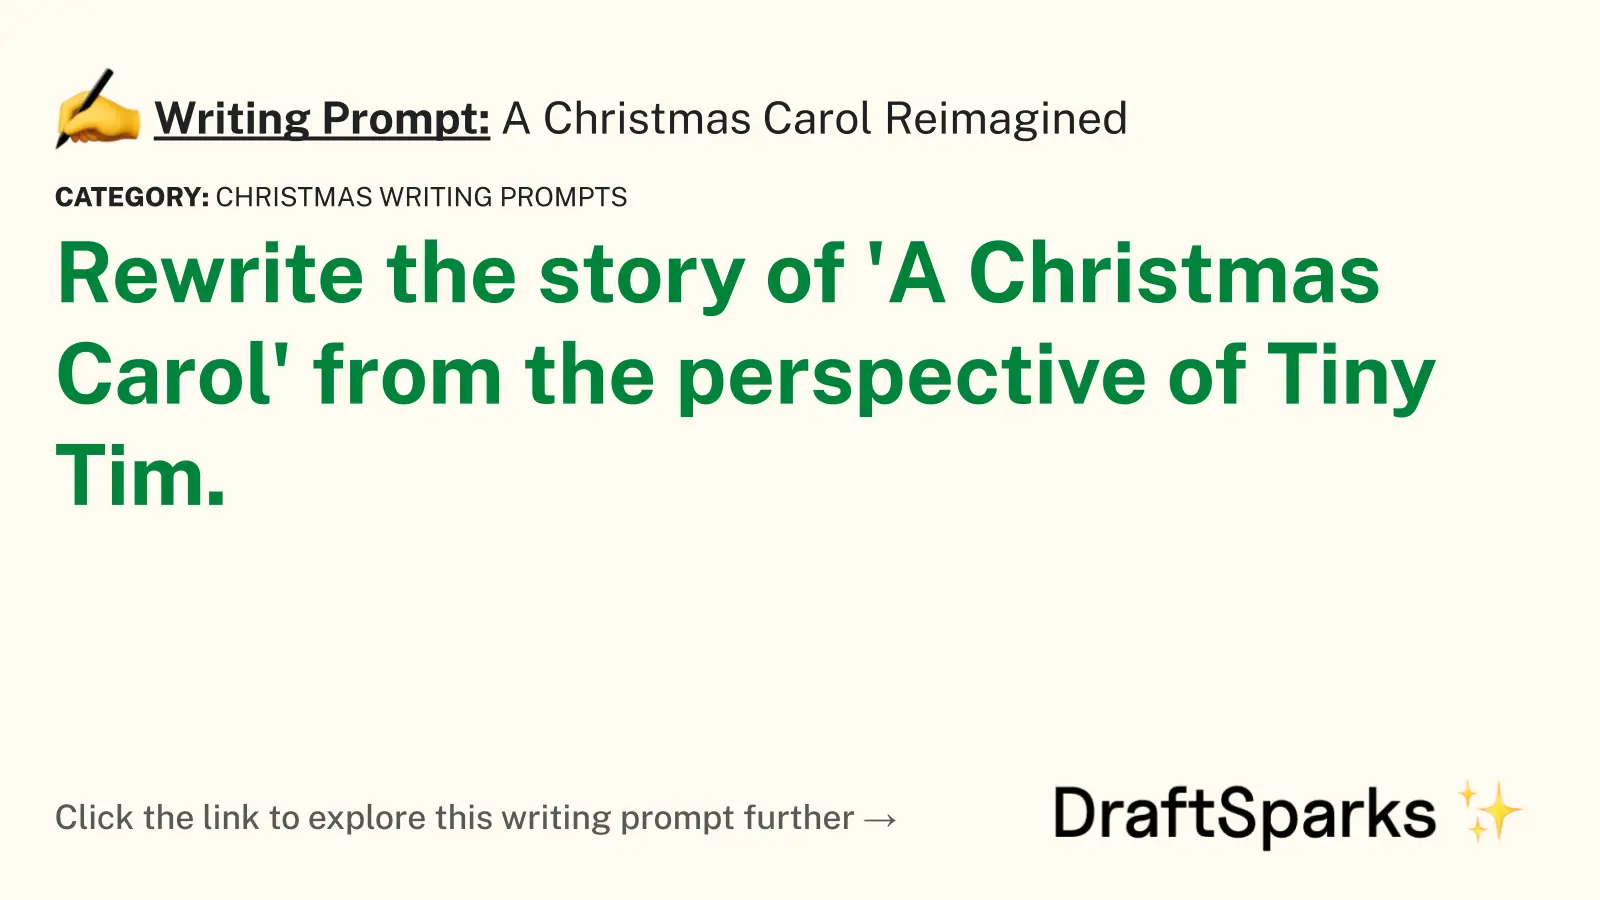 A Christmas Carol Reimagined